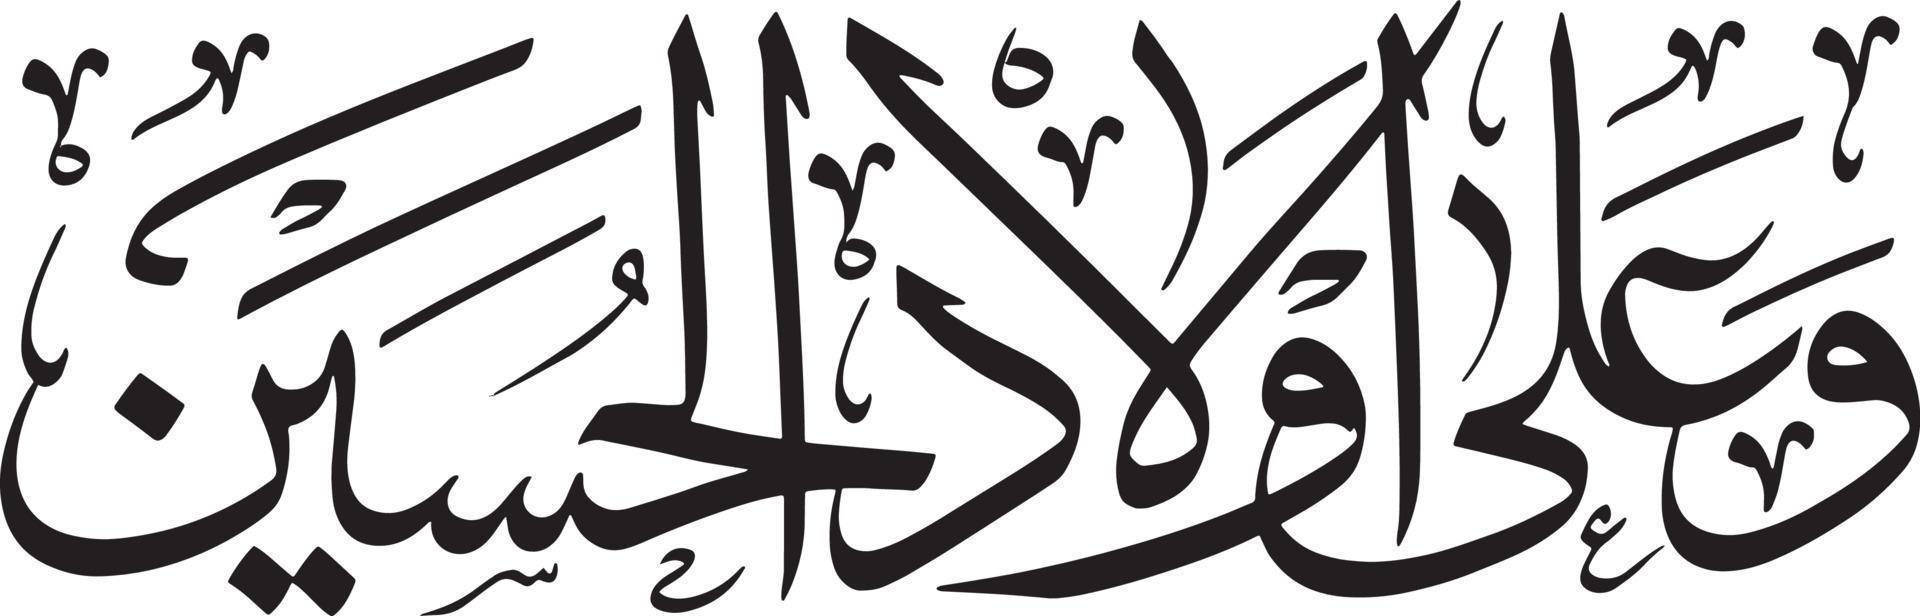 wa alla vecchio alhussein islamico calligrafia gratuito vettore